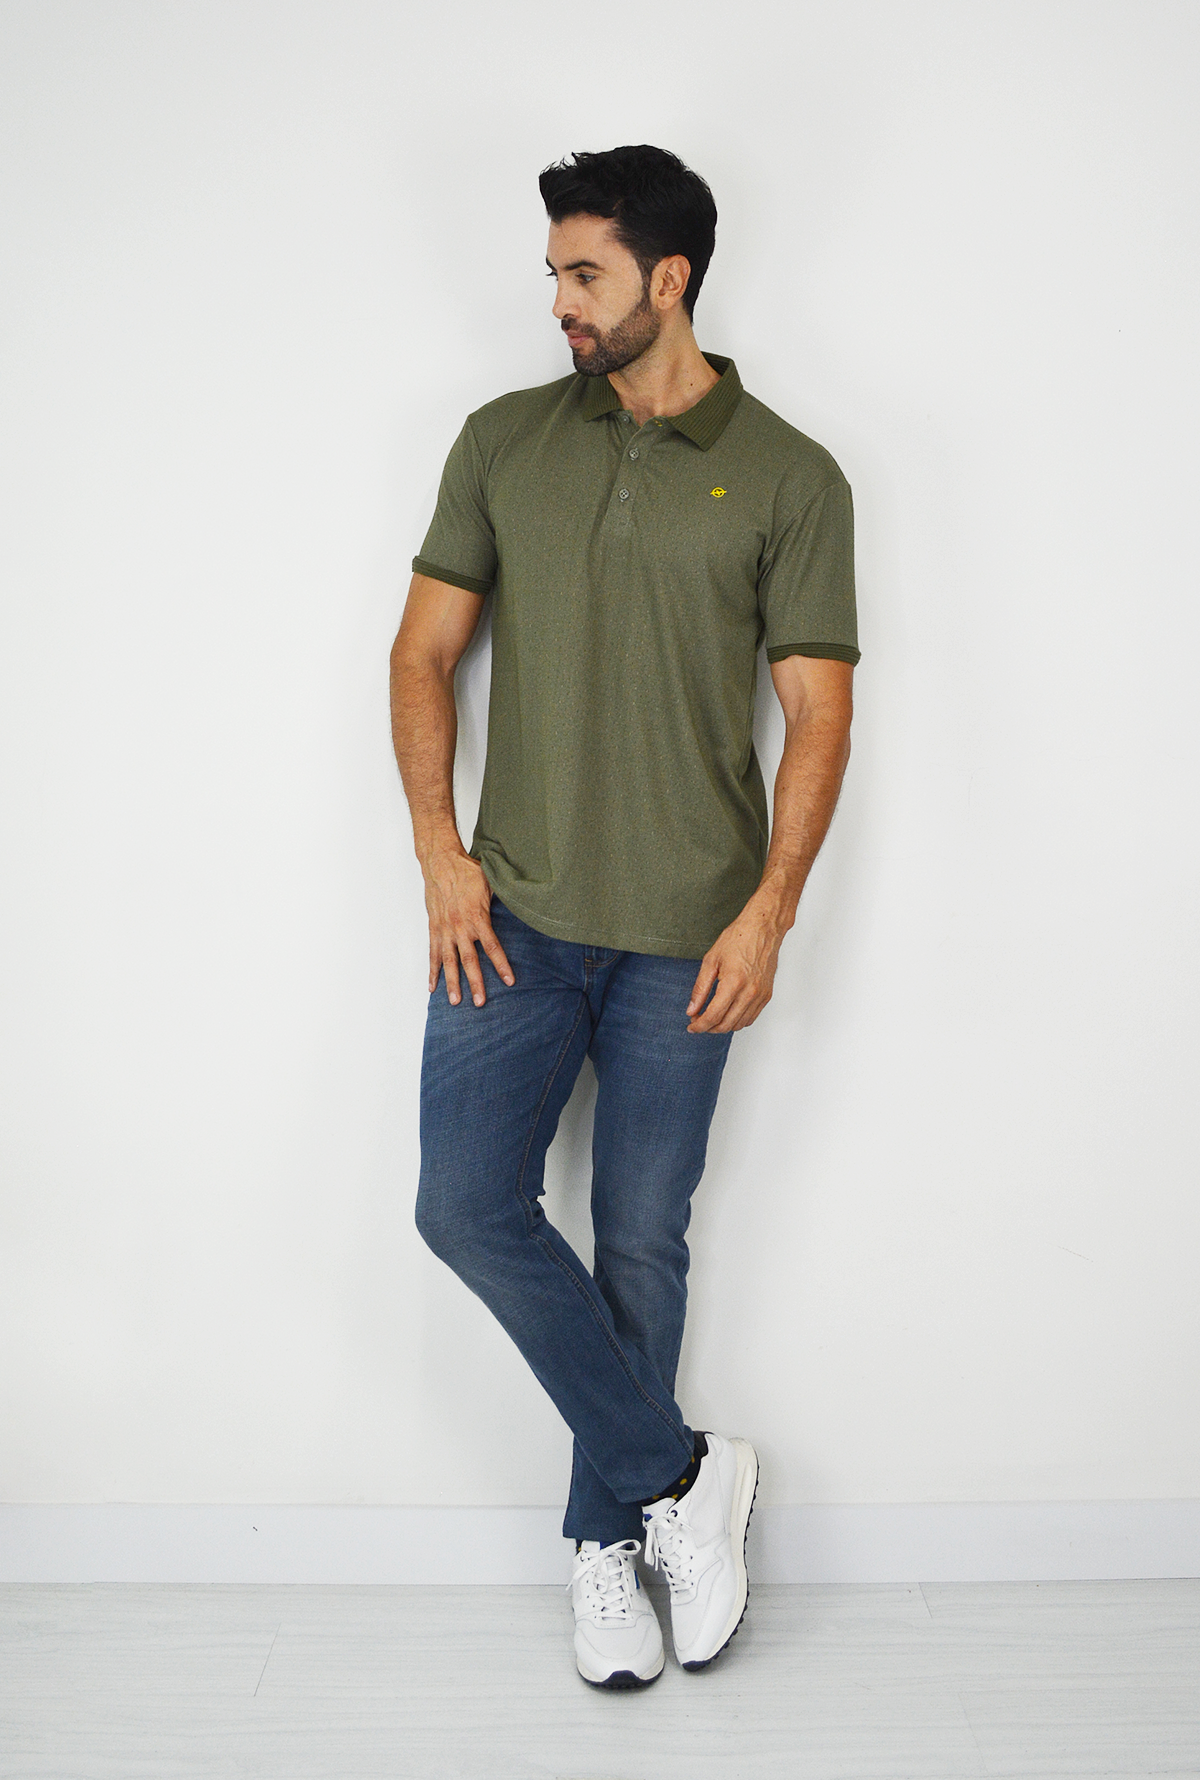 Camiseta de Hombre Tipo Polo con Tejido brasileño verde Para Hombre CP025